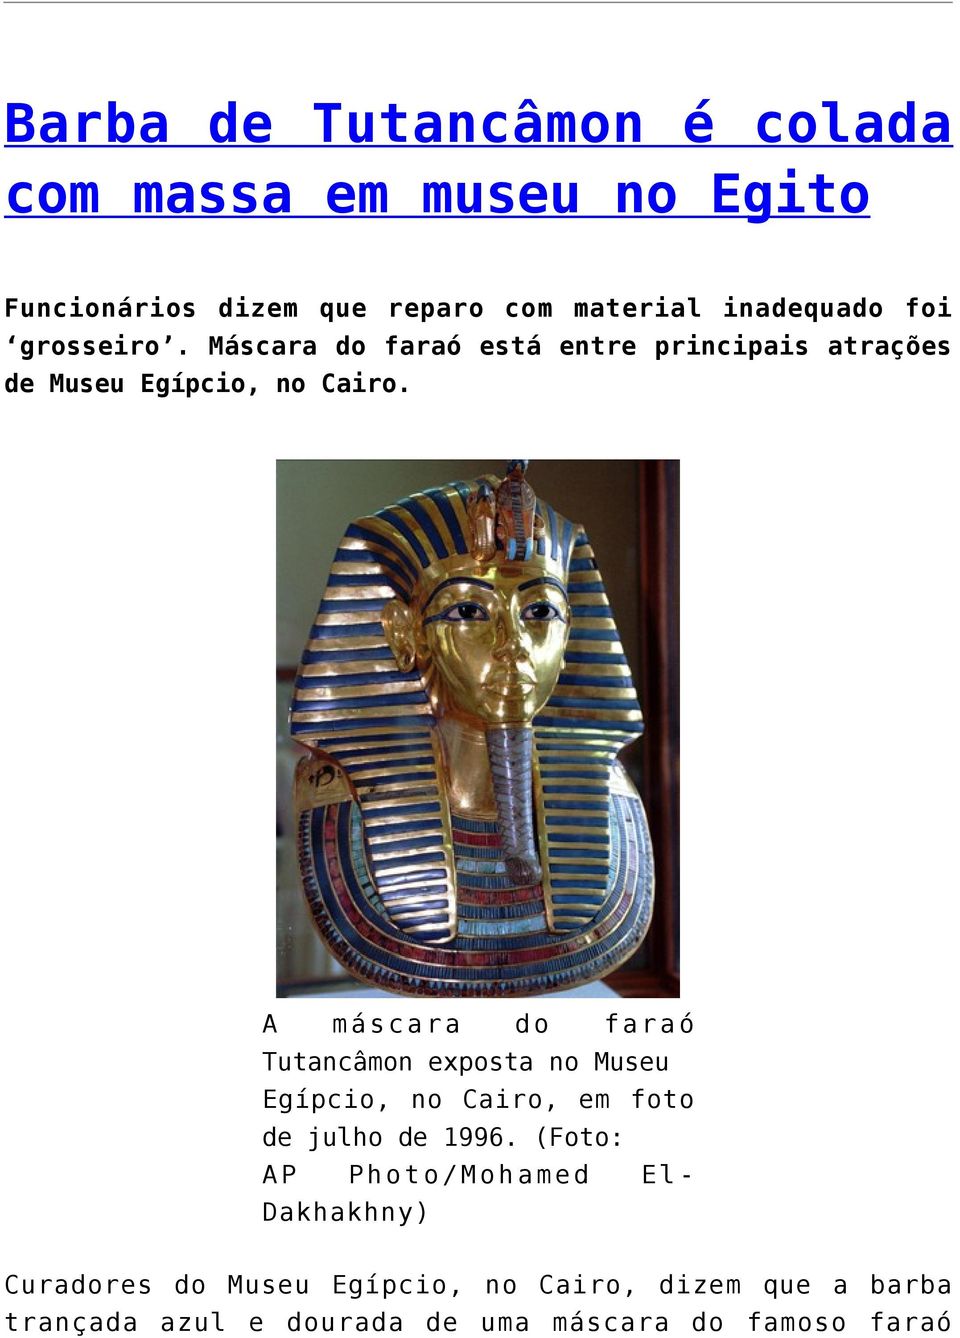 A máscara do faraó Tutancâmon exposta no Museu Egípcio, no Cairo, em foto de julho de 1996.